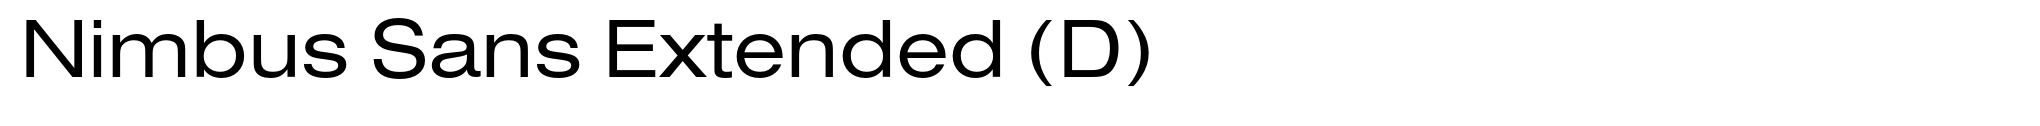 Nimbus Sans Extended (D) image